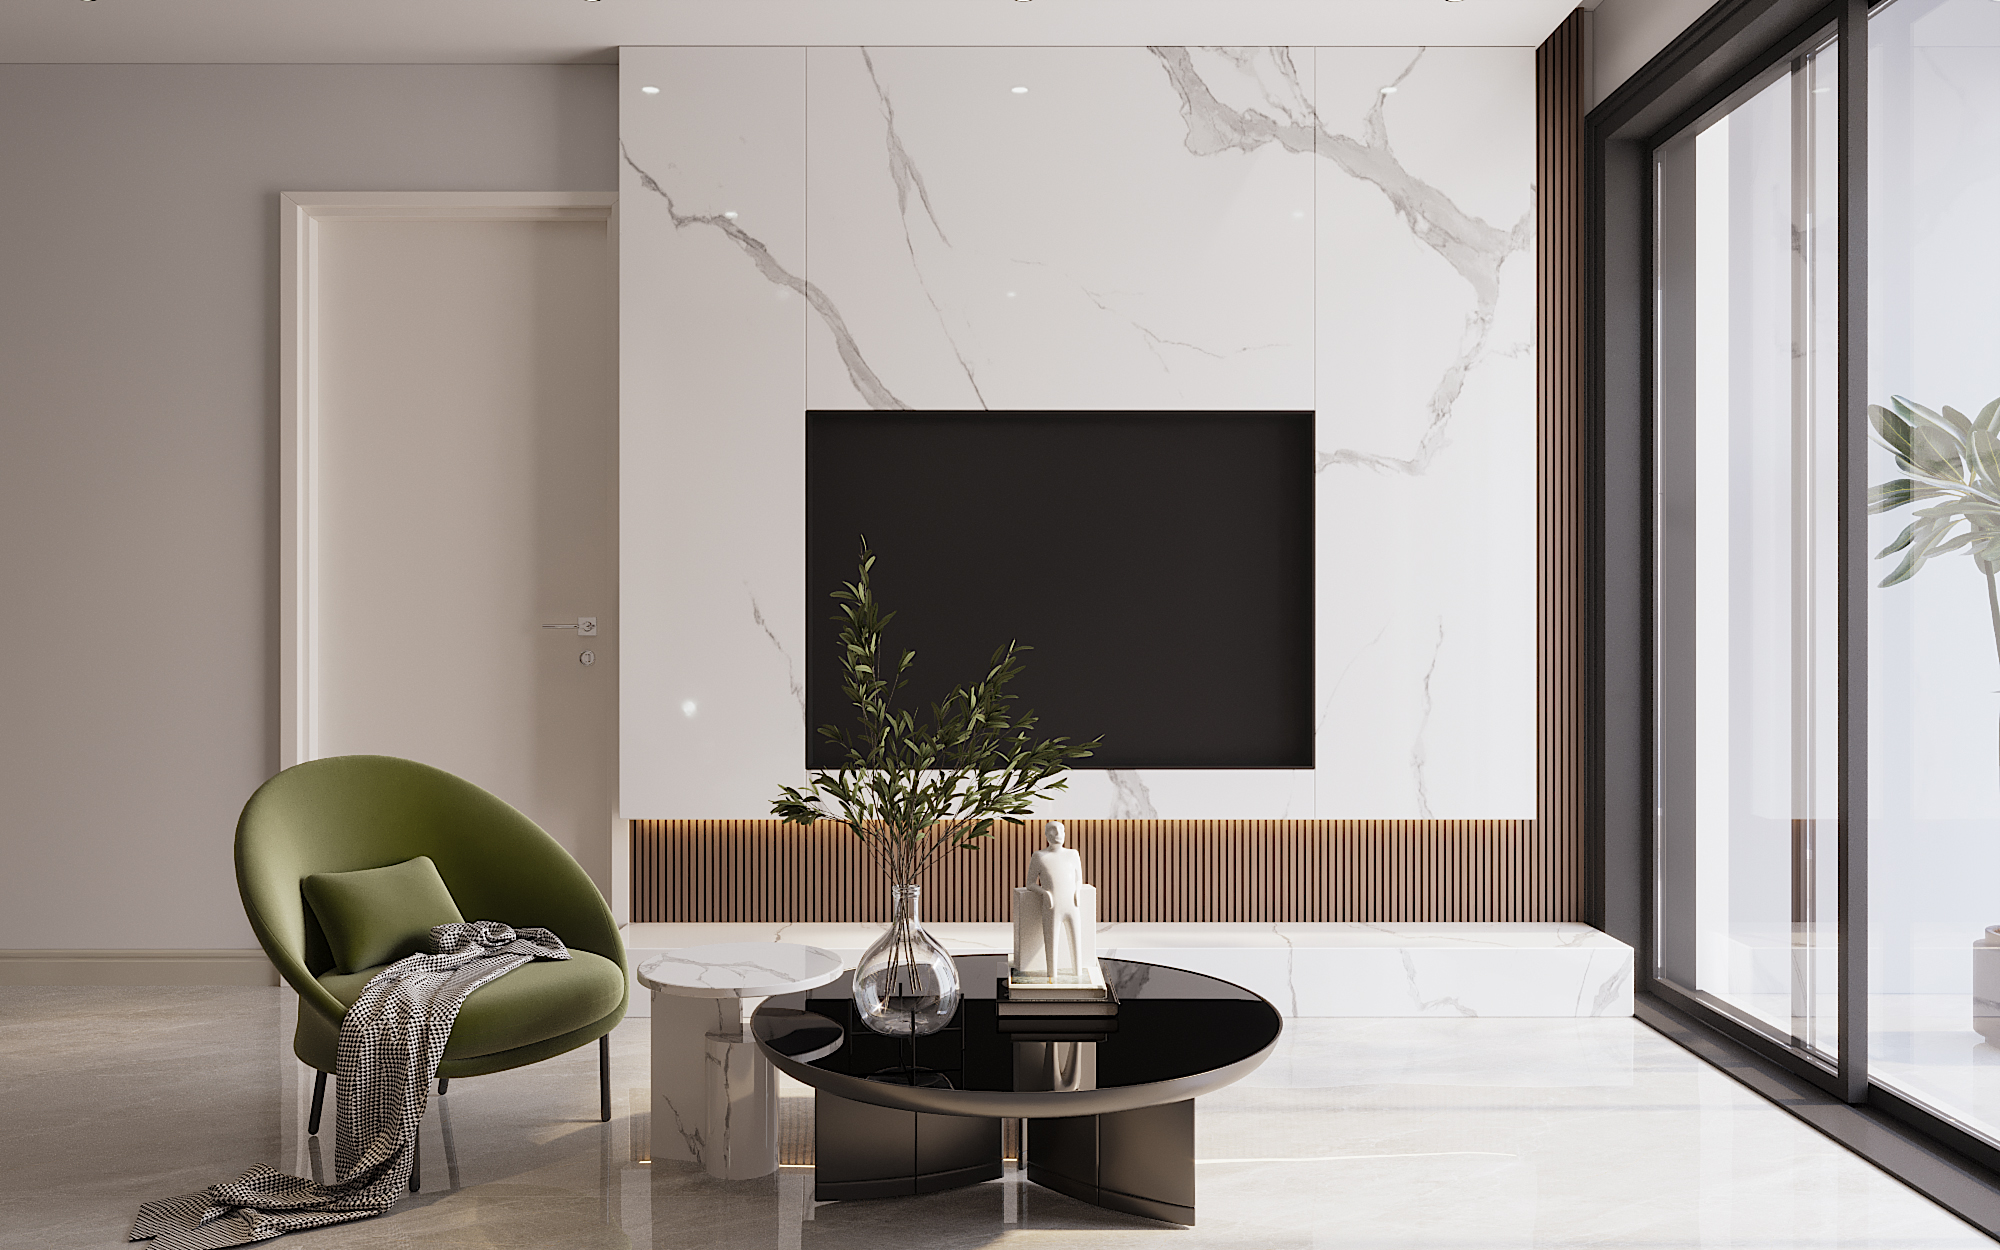 Xu hướng thiết kế hiện đại tối giản đồ nội thất không cần thiết giúp tối ưu không gian sử dụng.